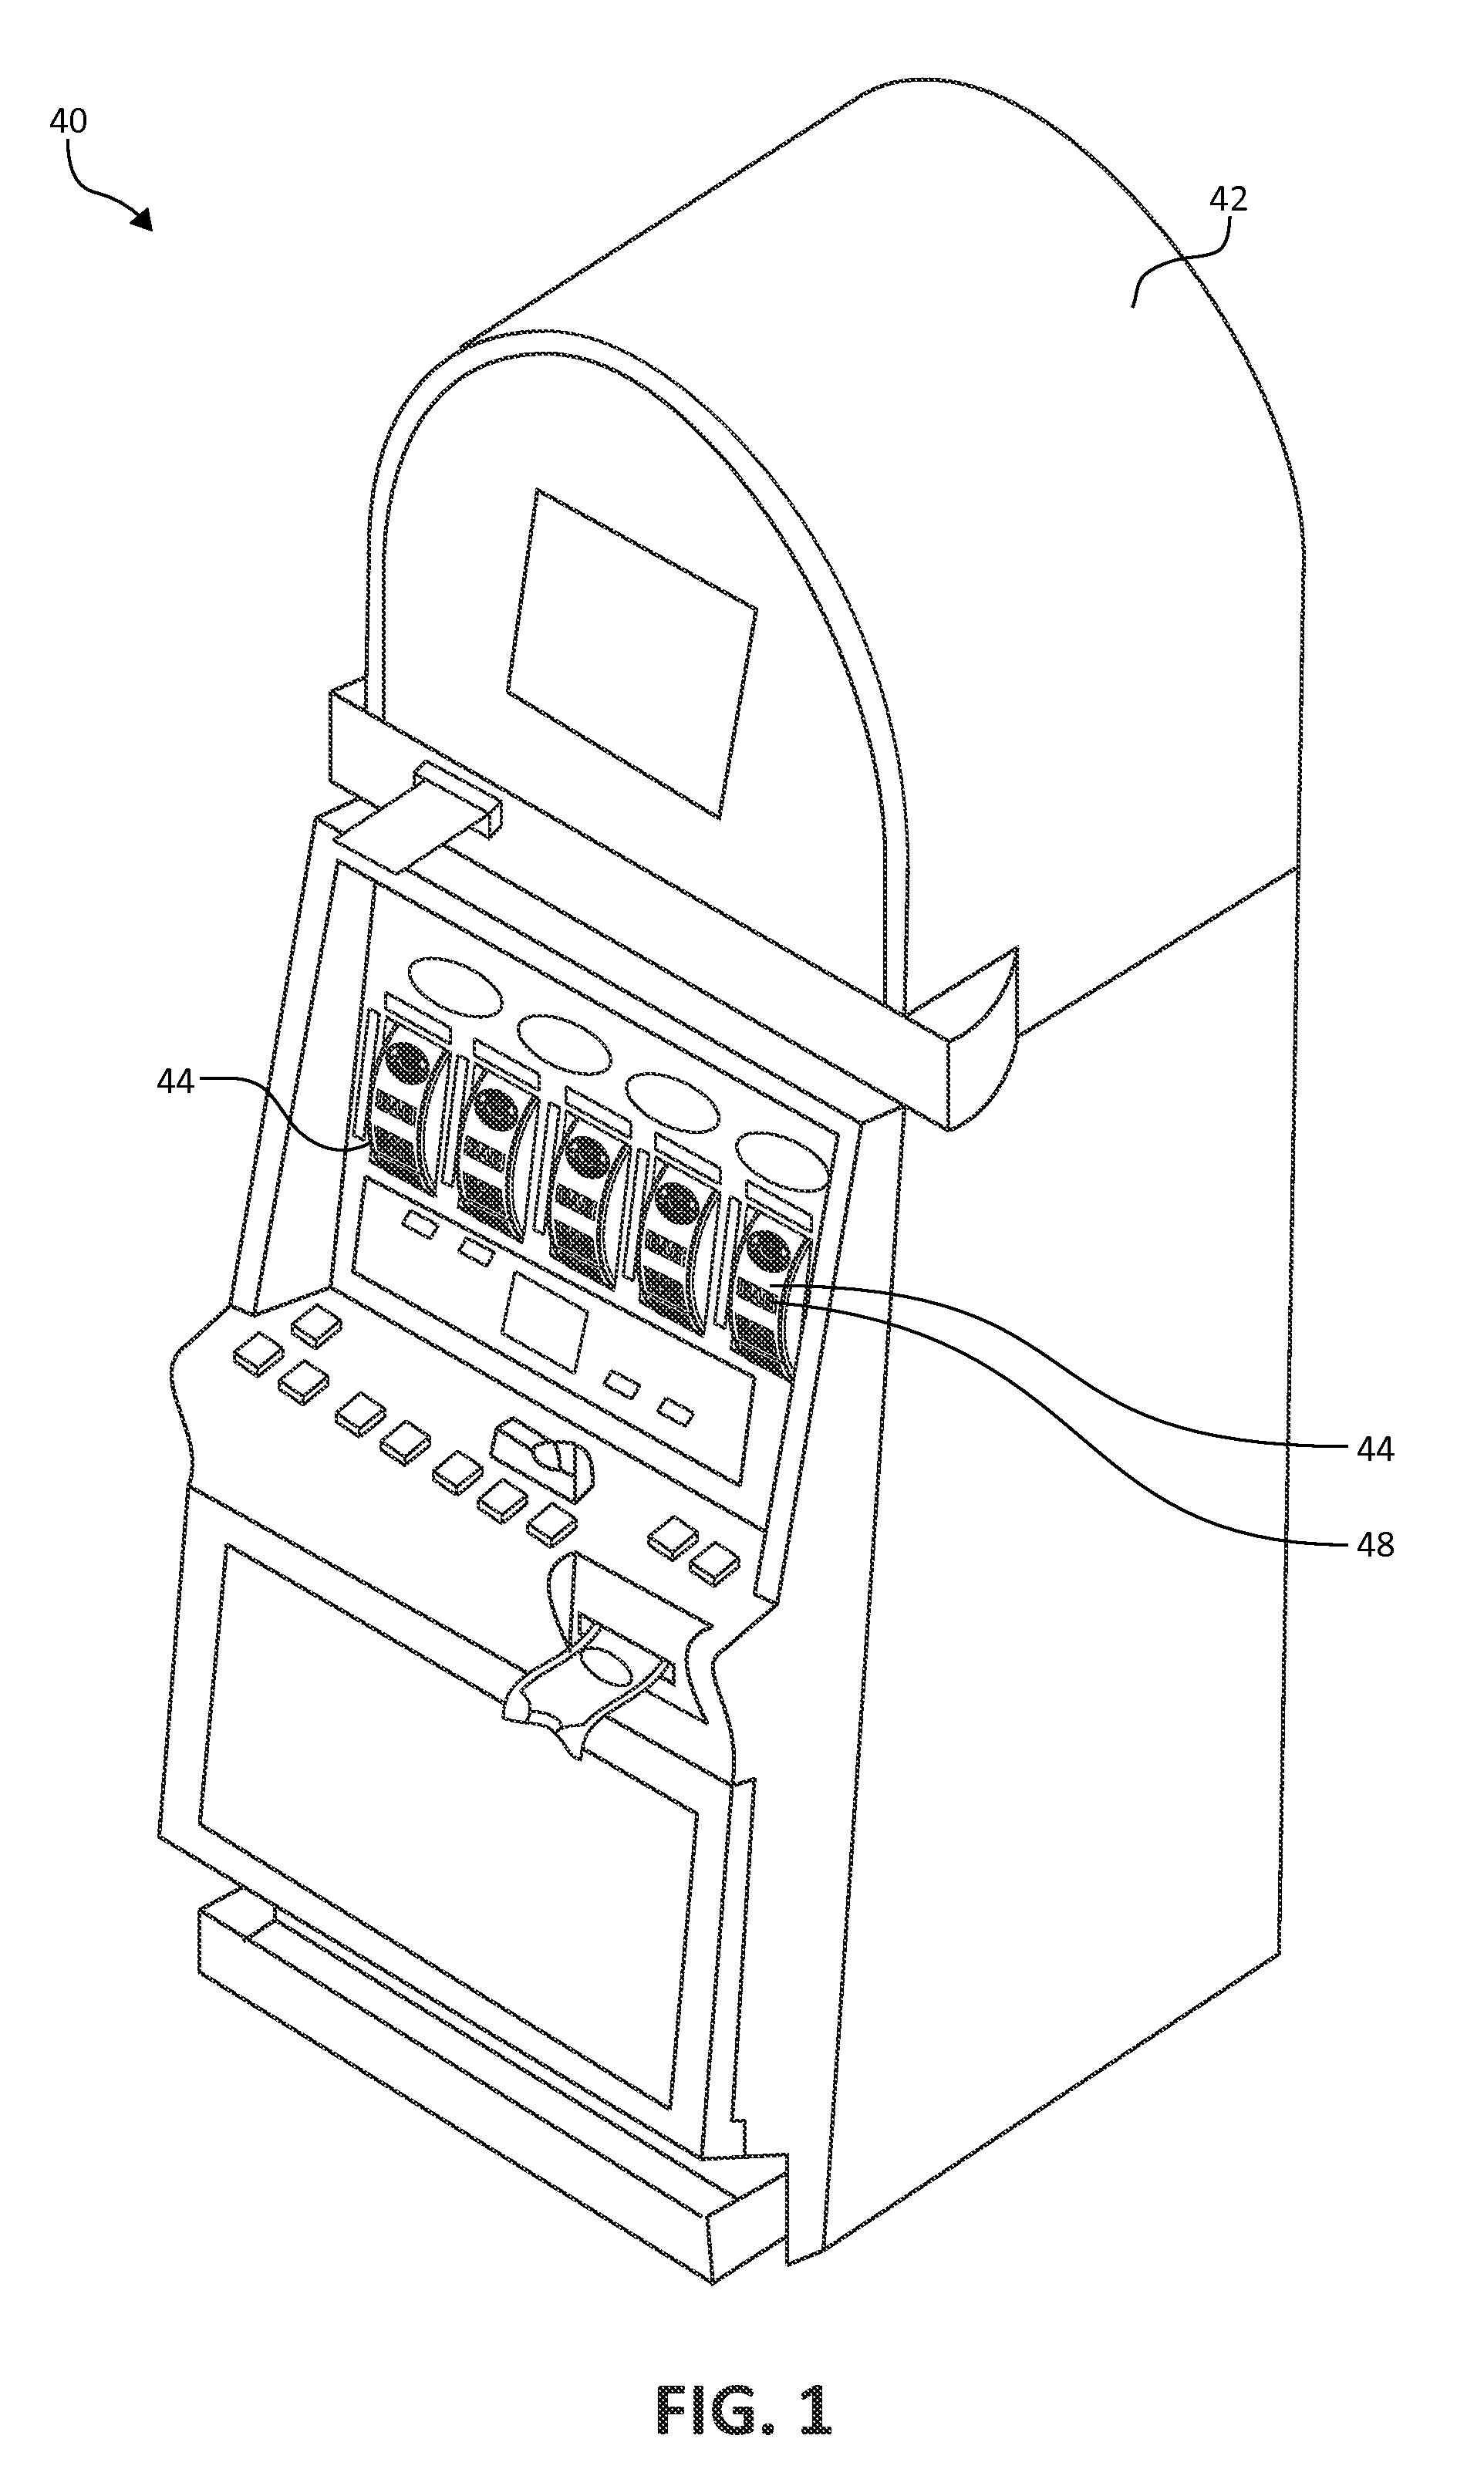 Lighting assembly for reel slot machine